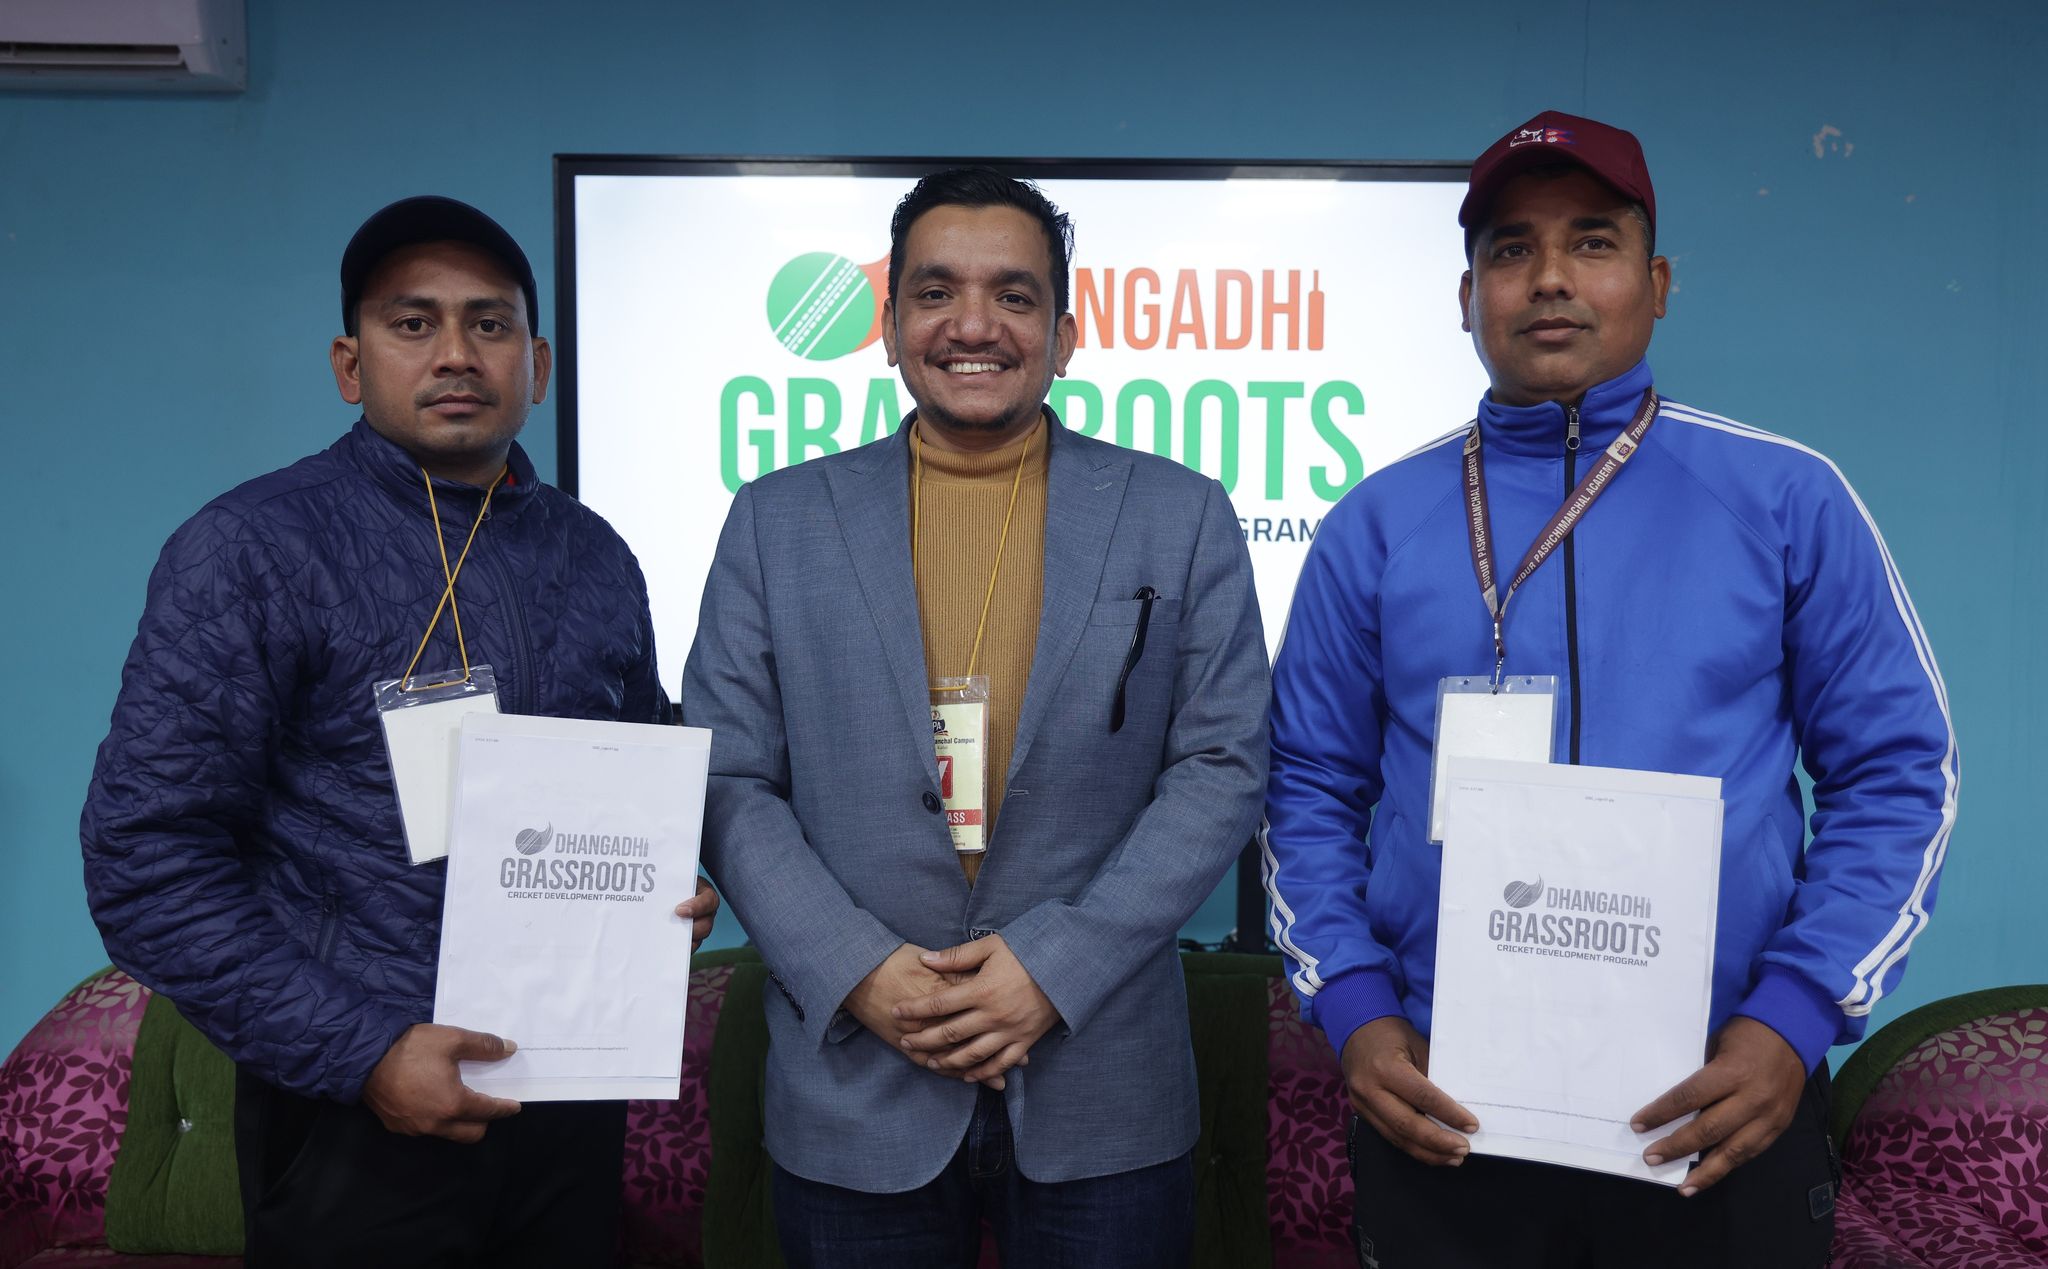 धनगढीमा ग्रासरुट क्रिकेटका लागि दुई प्रशिक्षक नियुक्त